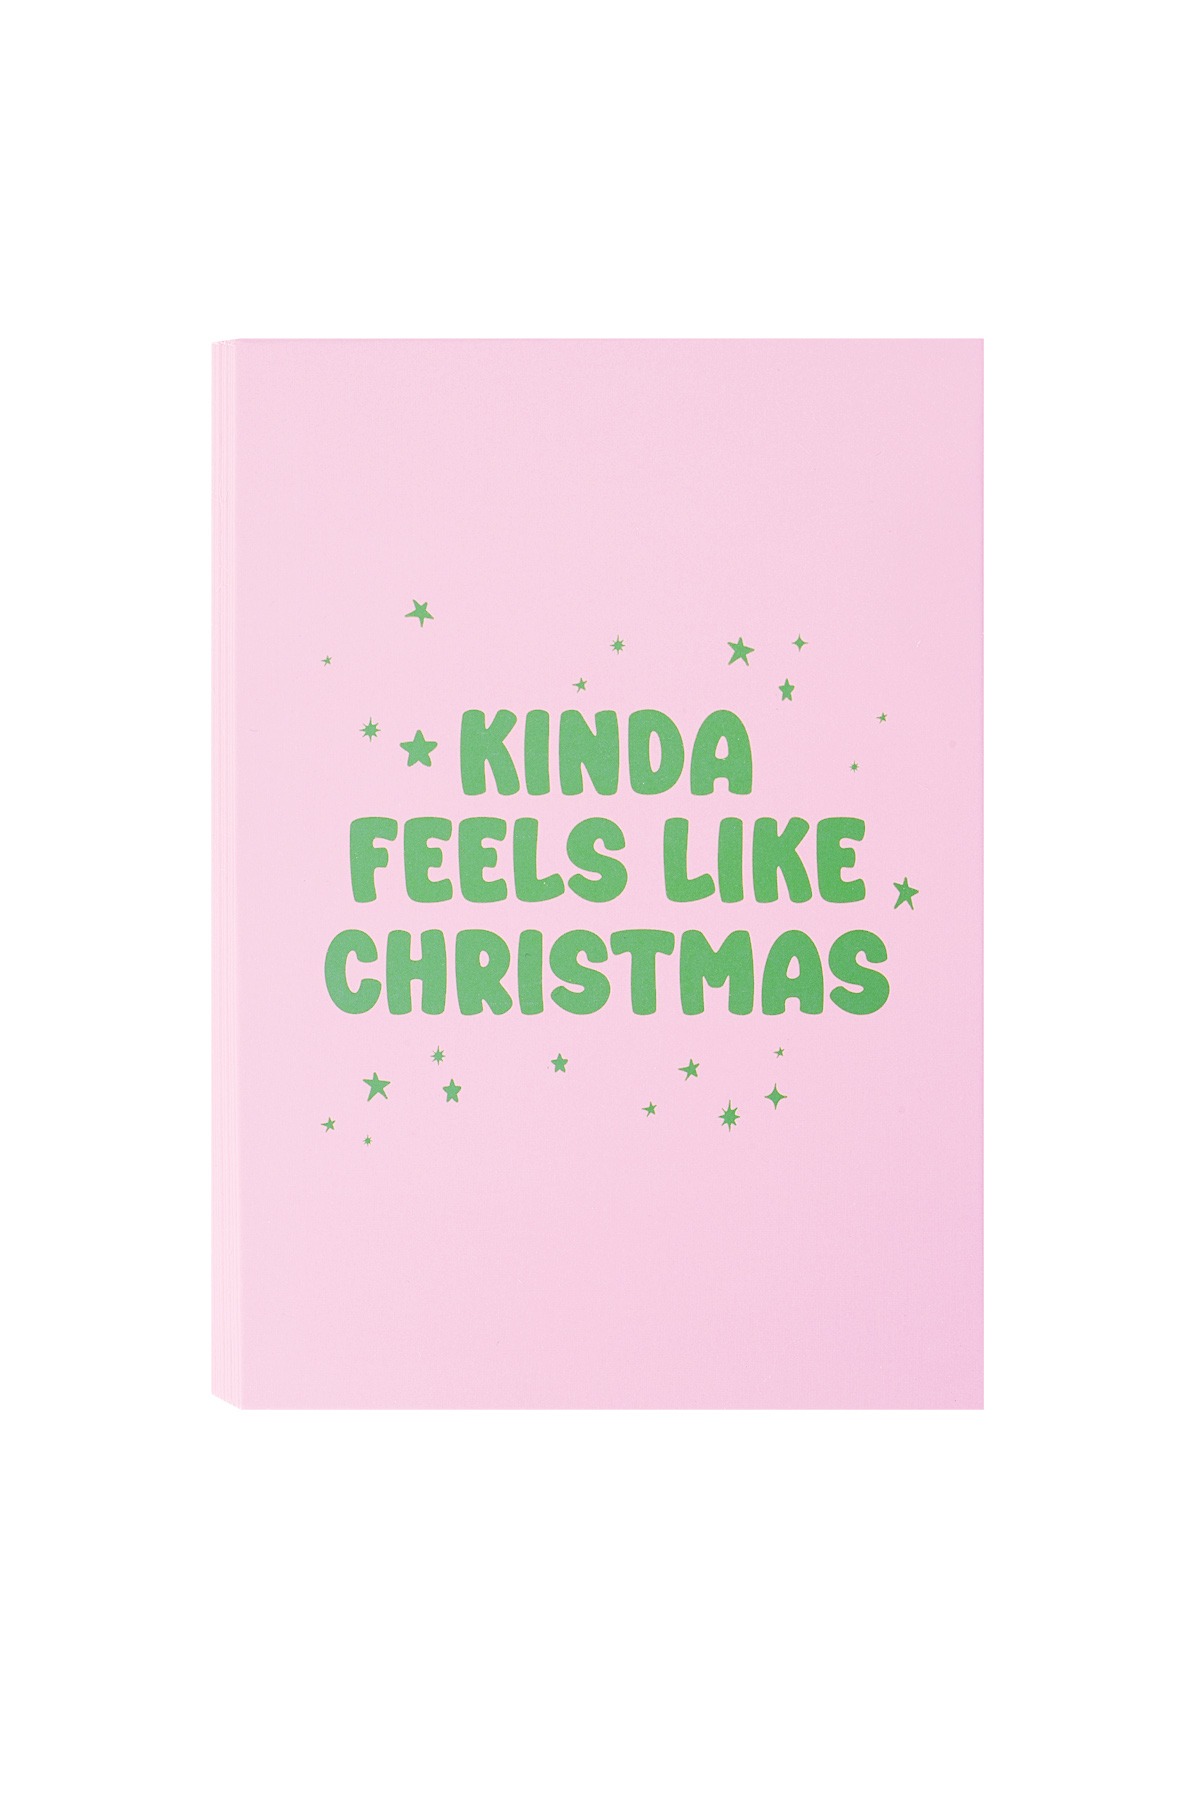 Christmas greeting card kinda feels like christmas - pink h5 